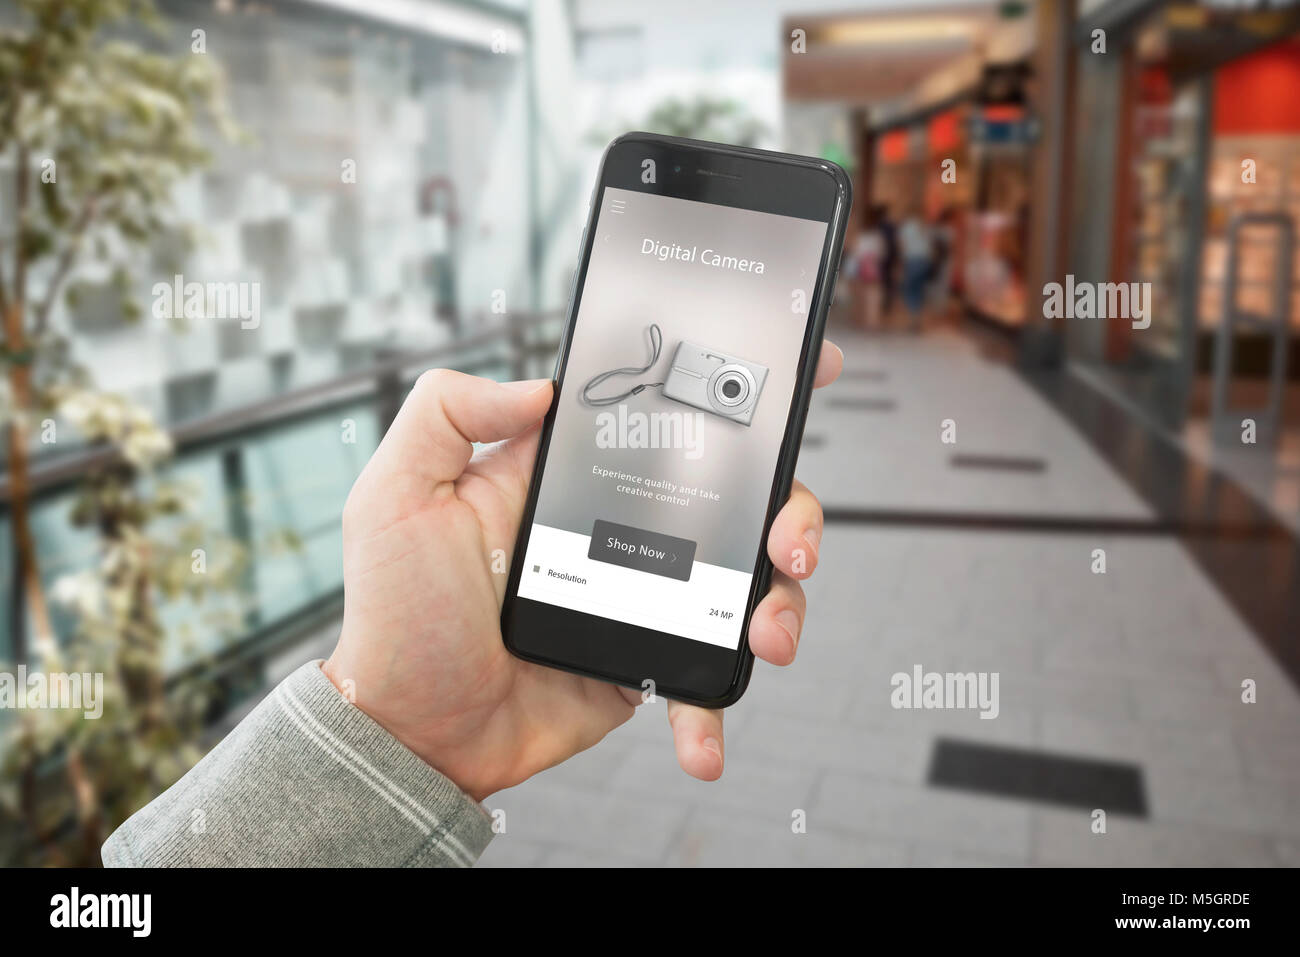 Shopping technologische Produkte mit Web site auf Smart Phone angezeigt. Shopping Mall im Hintergrund. Stockfoto